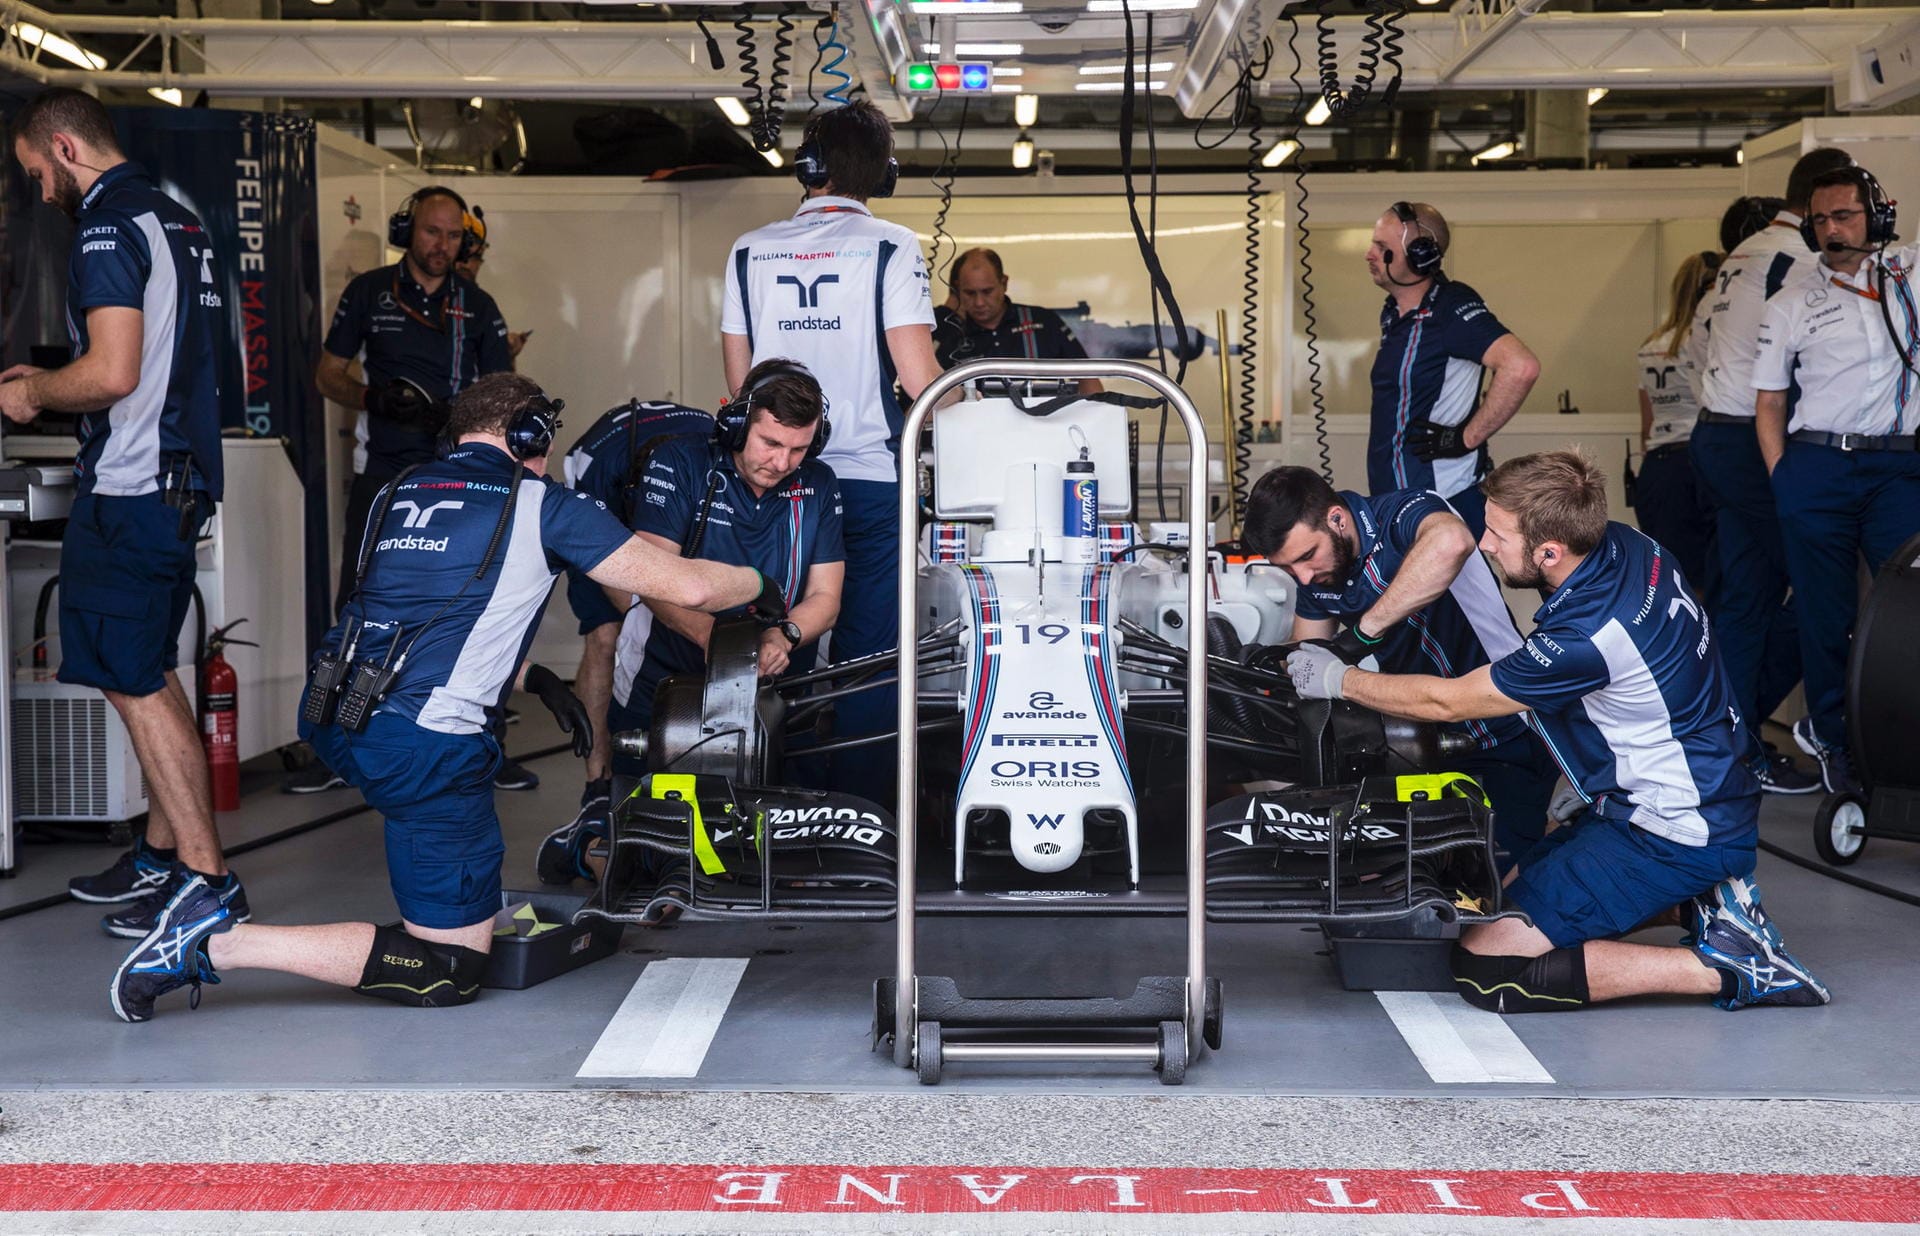 Hektische Betriebsamkeit: In der Williams-Box schrauben die Mechaniker am Auto von Felipe Massa.